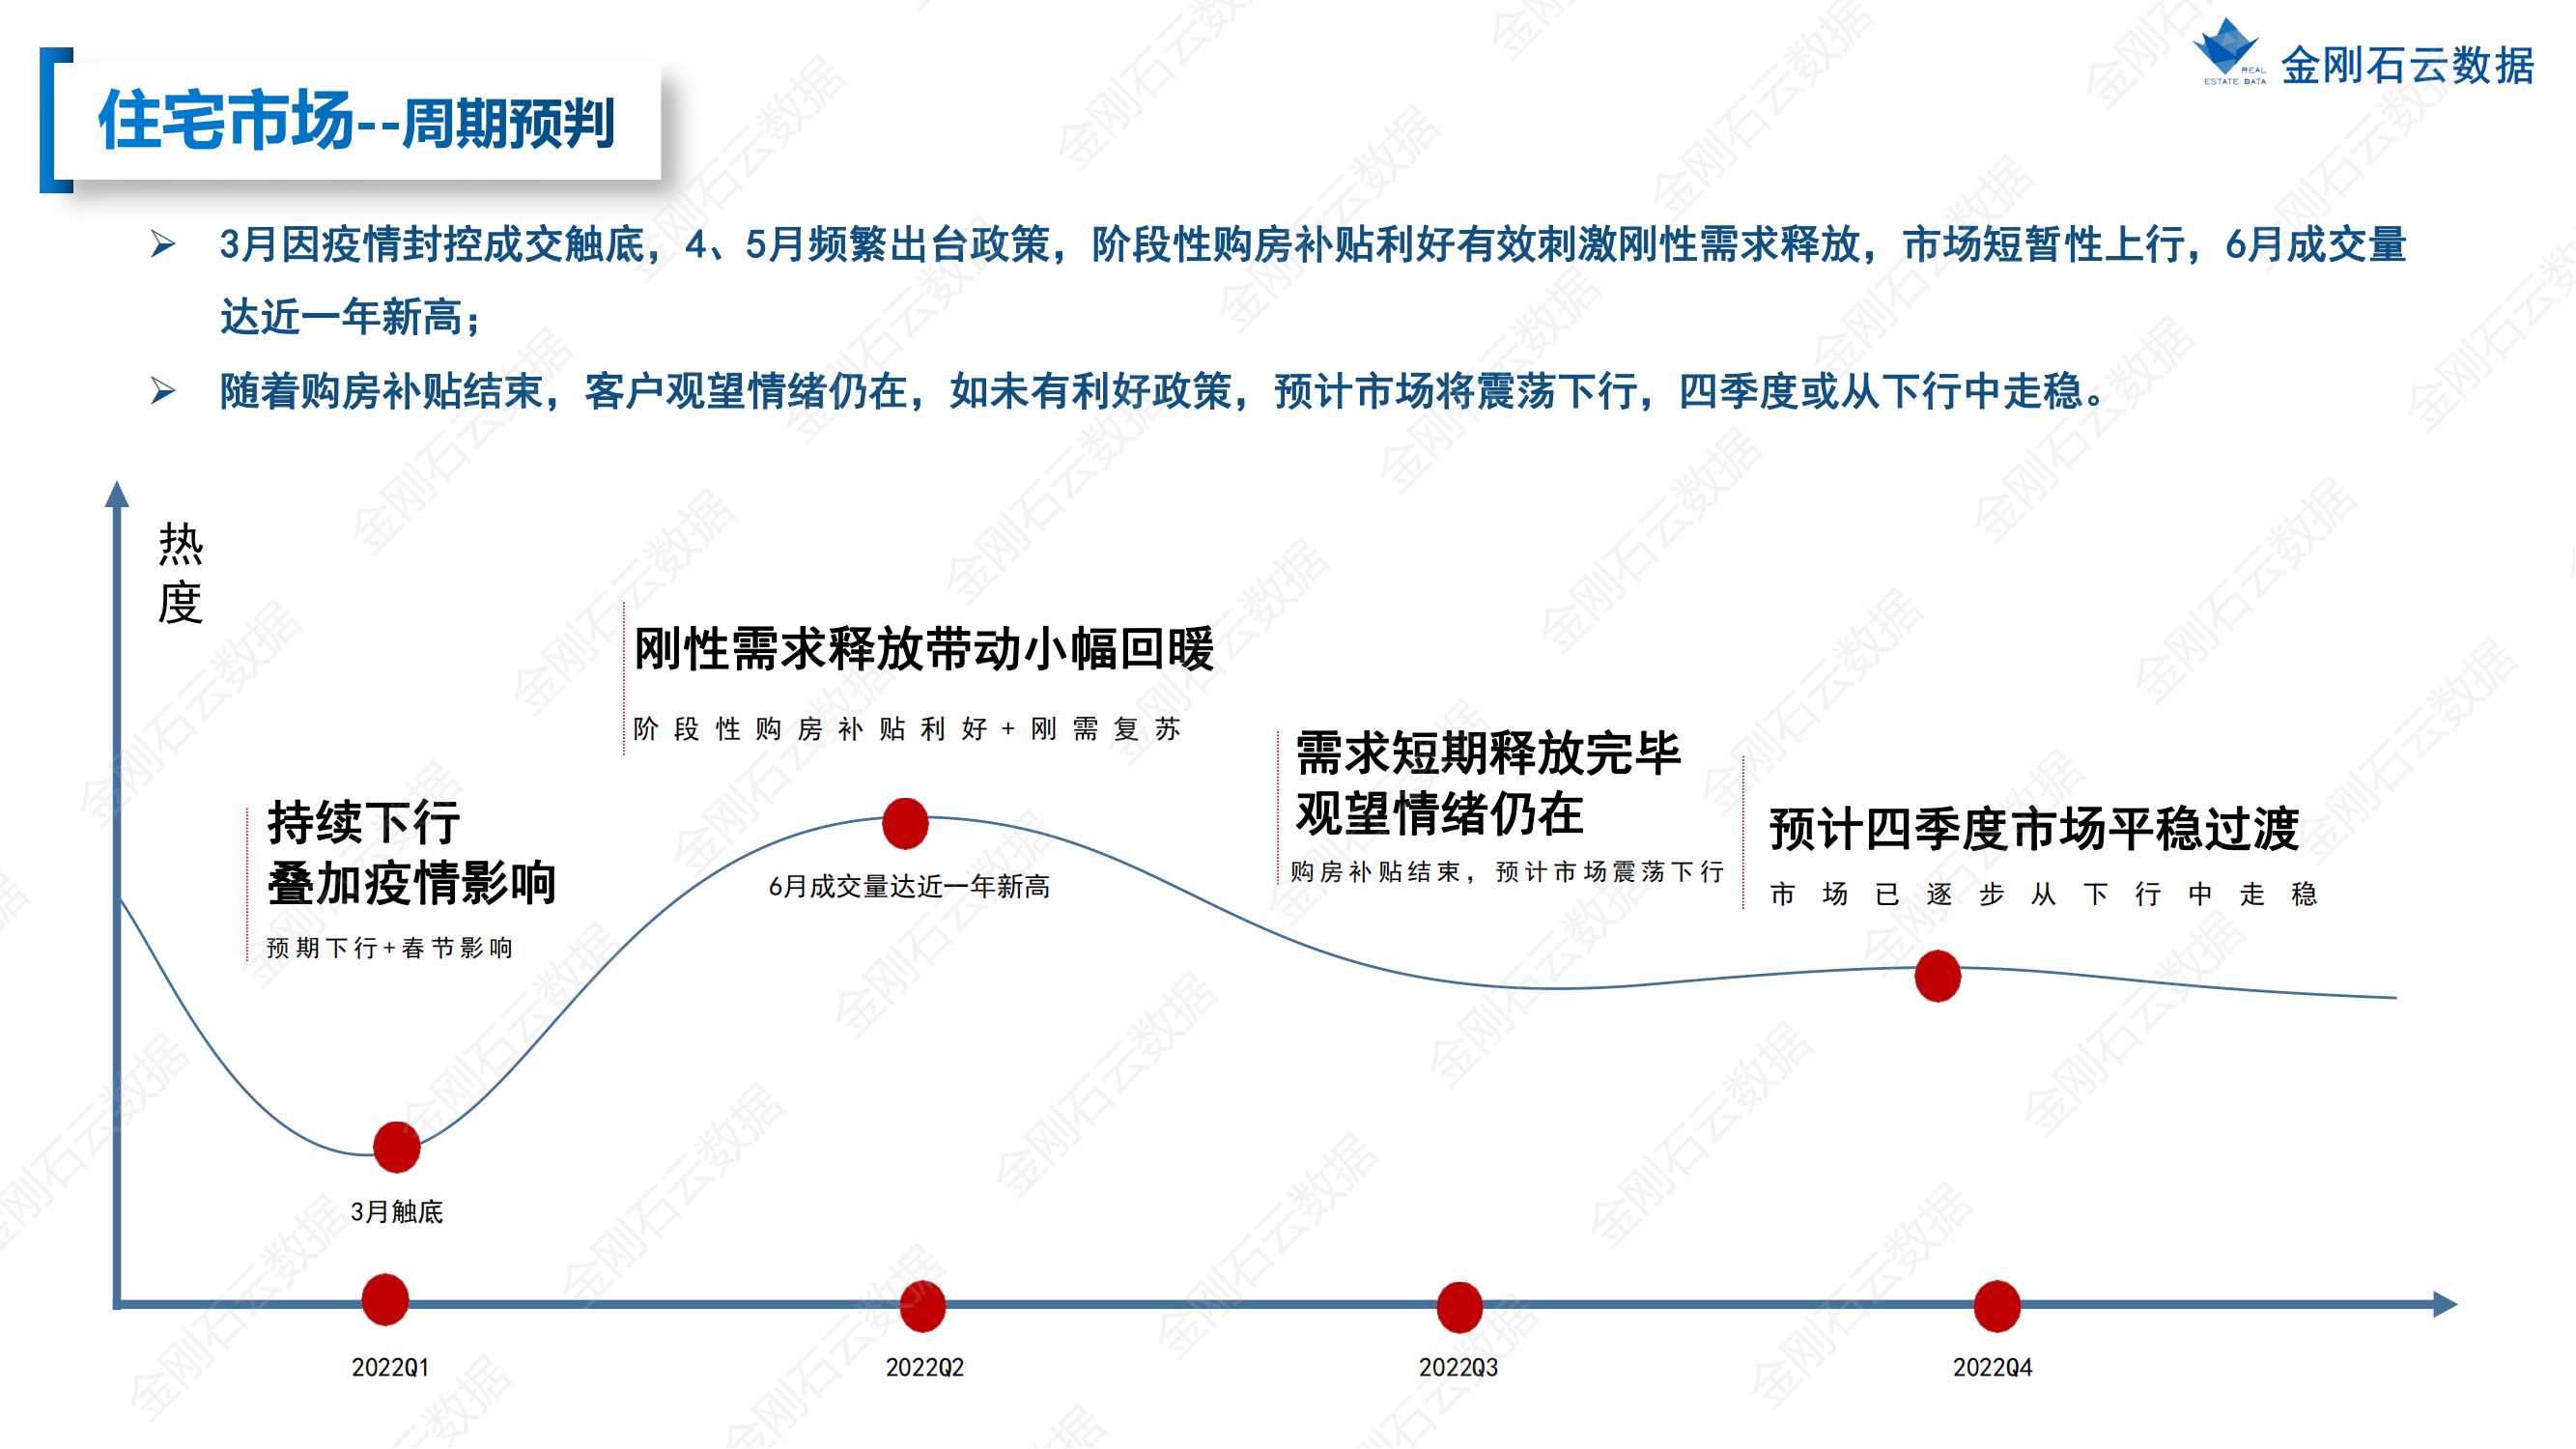 【江苏连云港】2022年上半年度市场报告(图22)